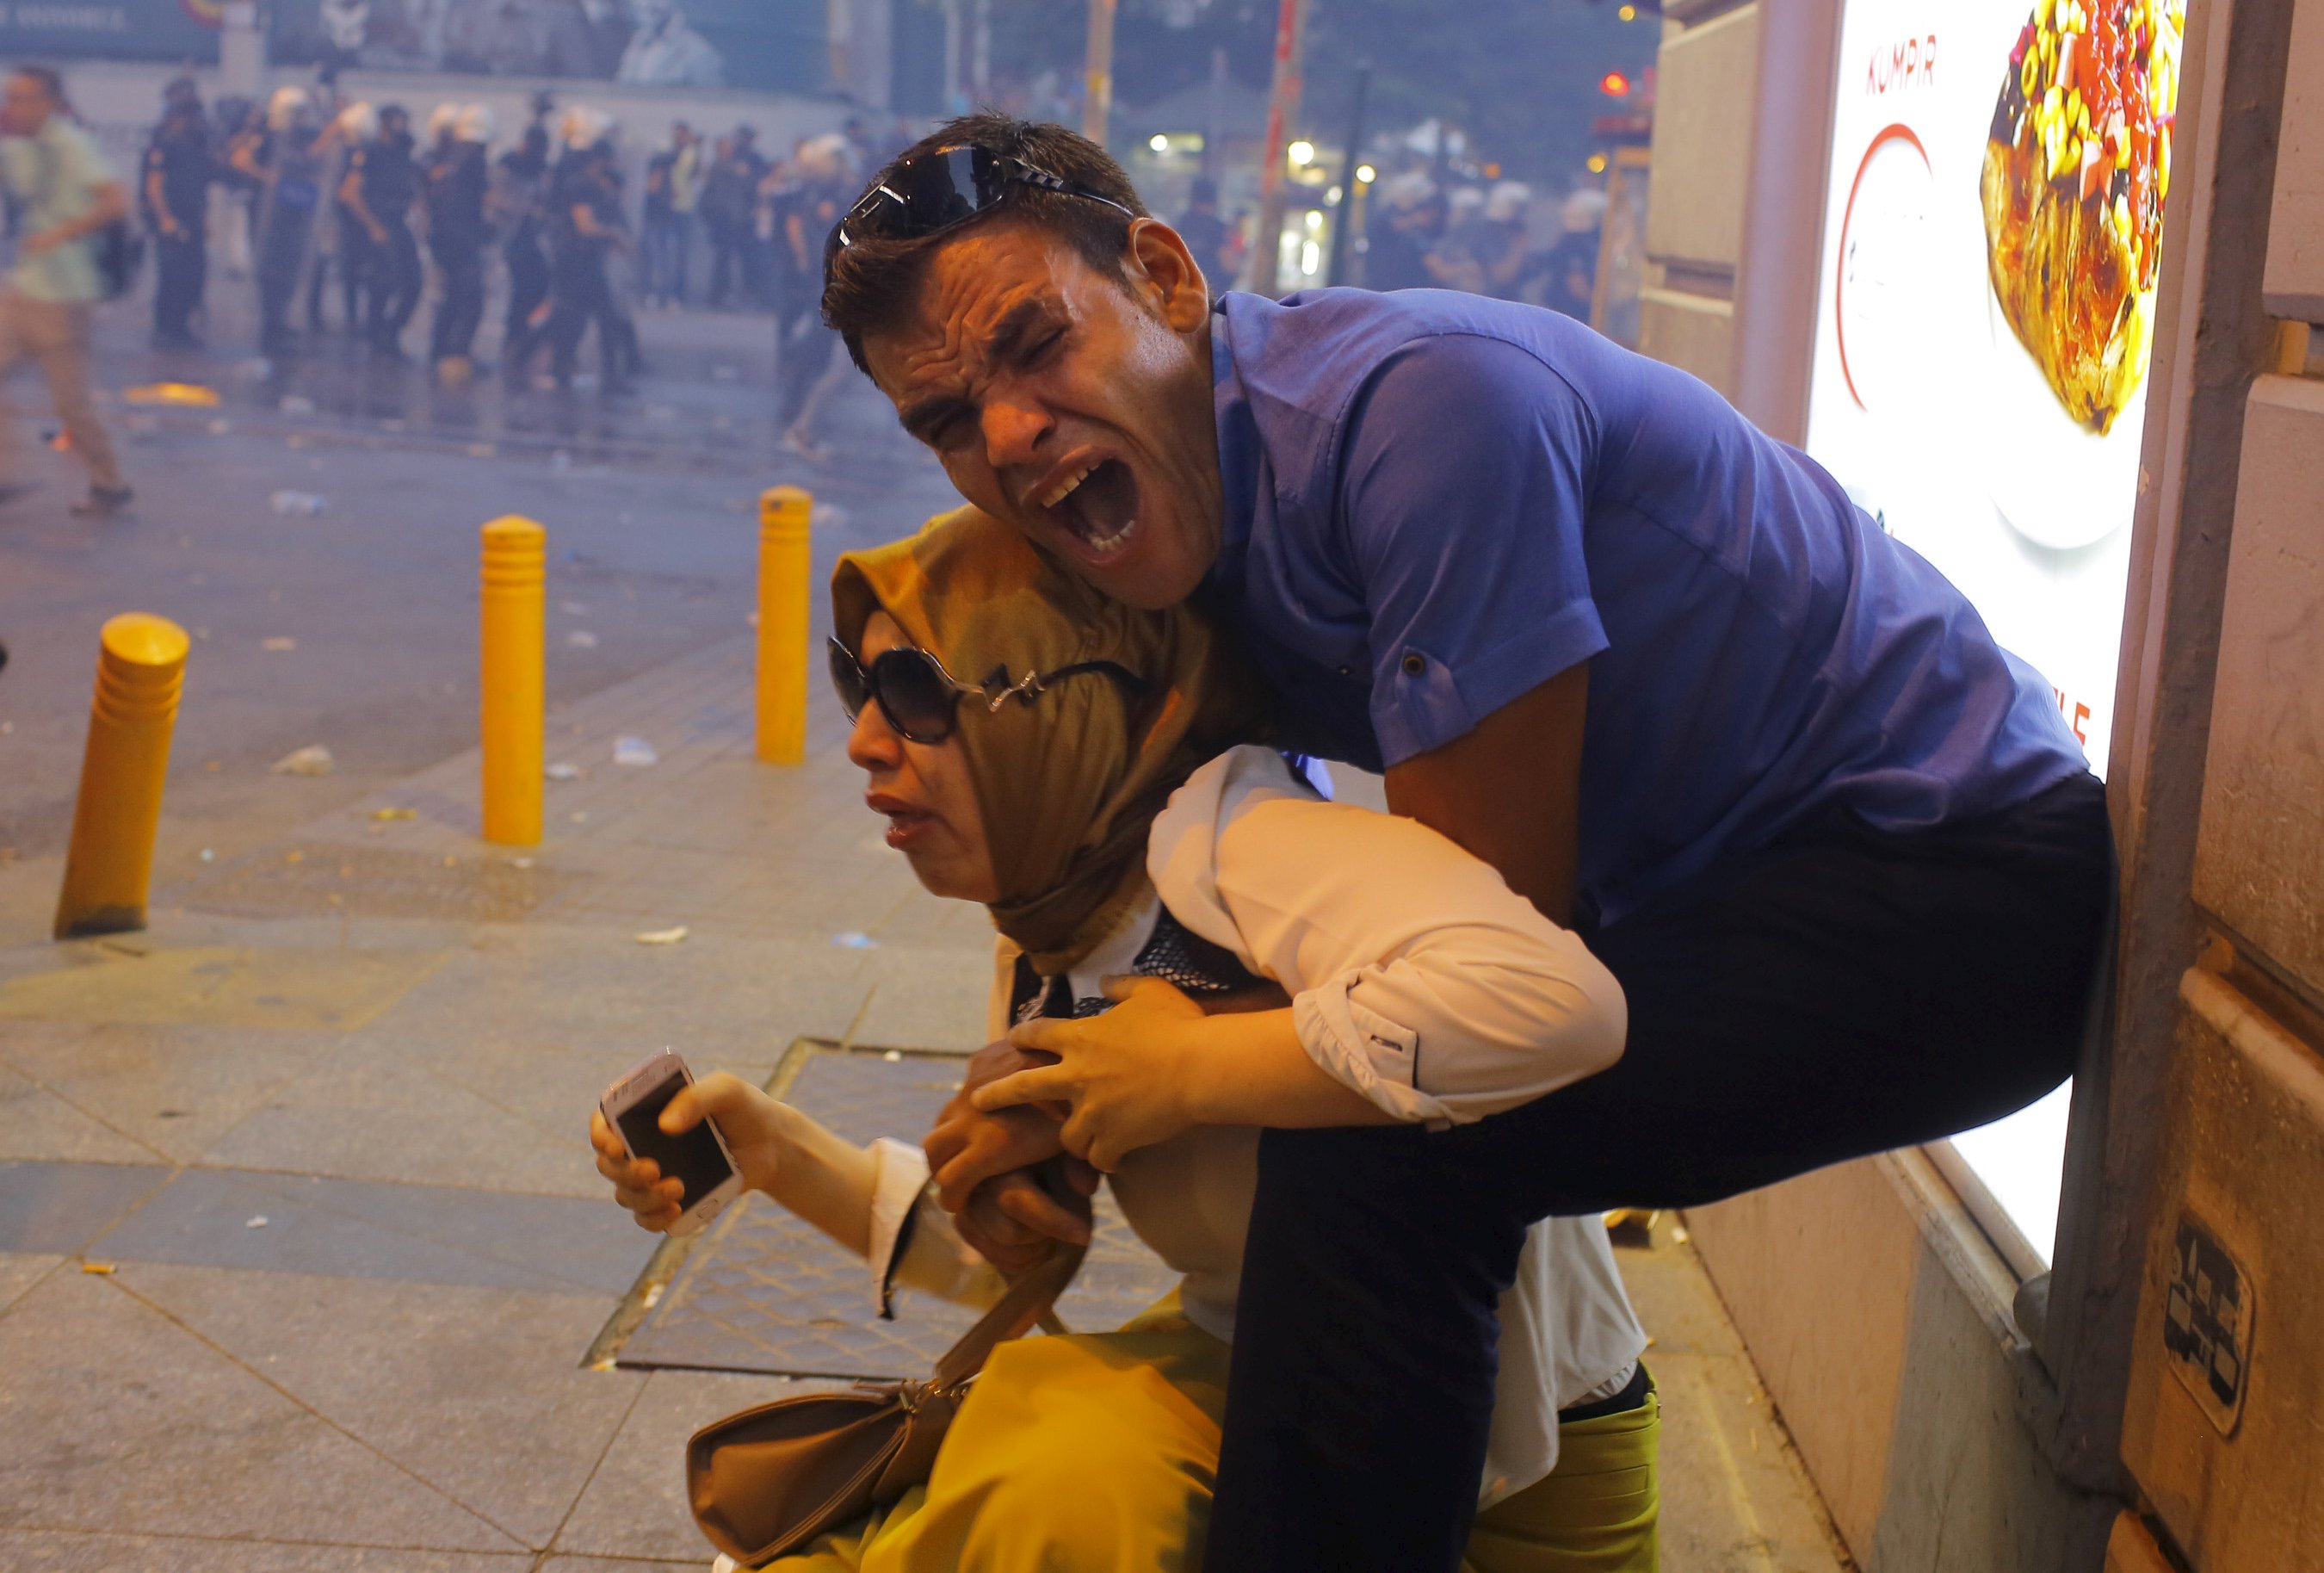 Una pareja, afectados por el gas lacrimógeno utilizado por la policía antidisturbios para dispersar a los manifestantes, reacciona en el centro de Estambul, Turquía 20 de julio de 2015